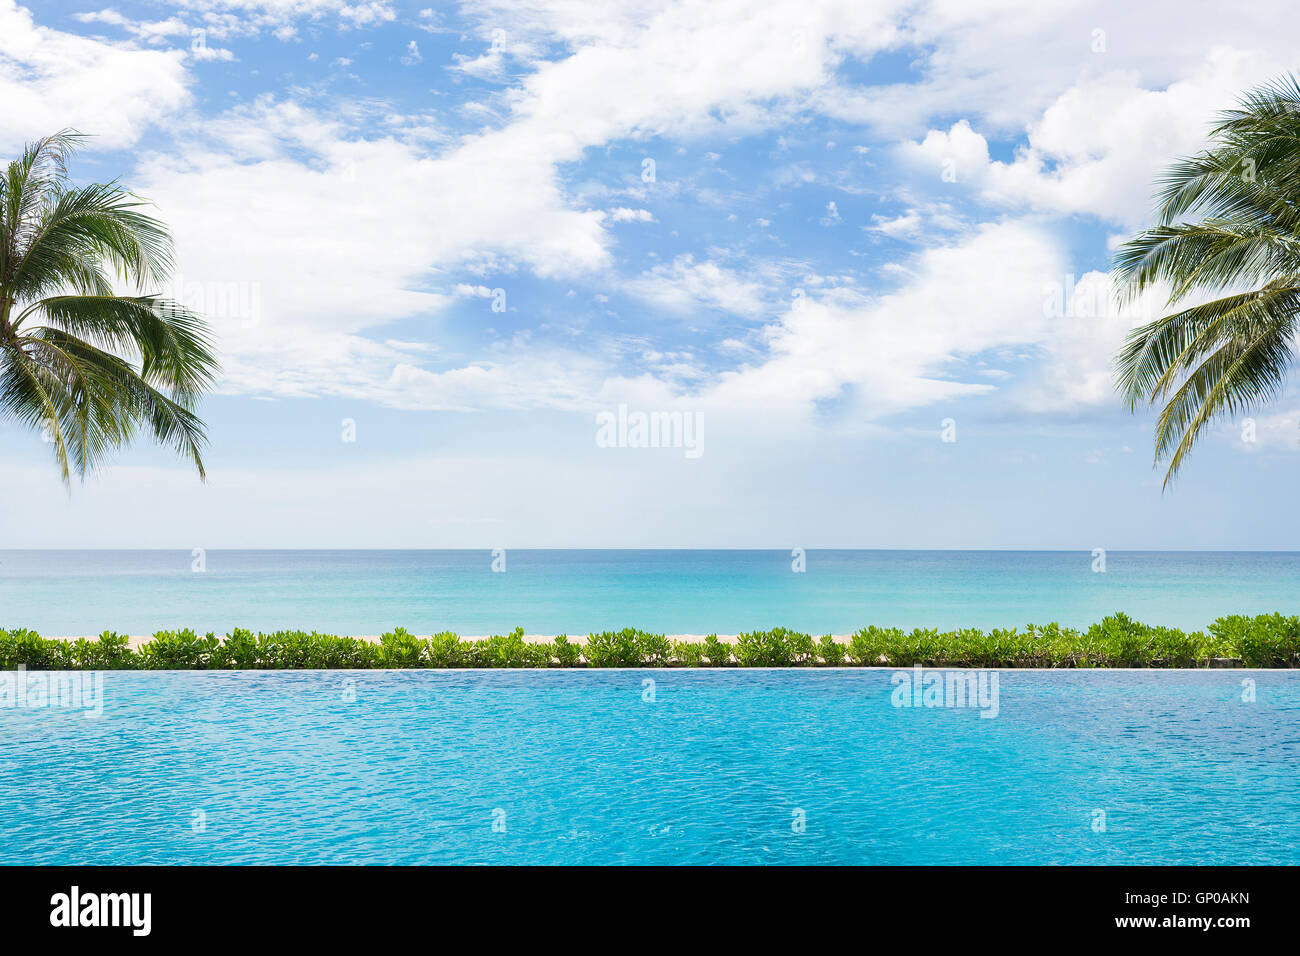 Belle plage et mer tropicale, affichage de swimming pool Banque D'Images